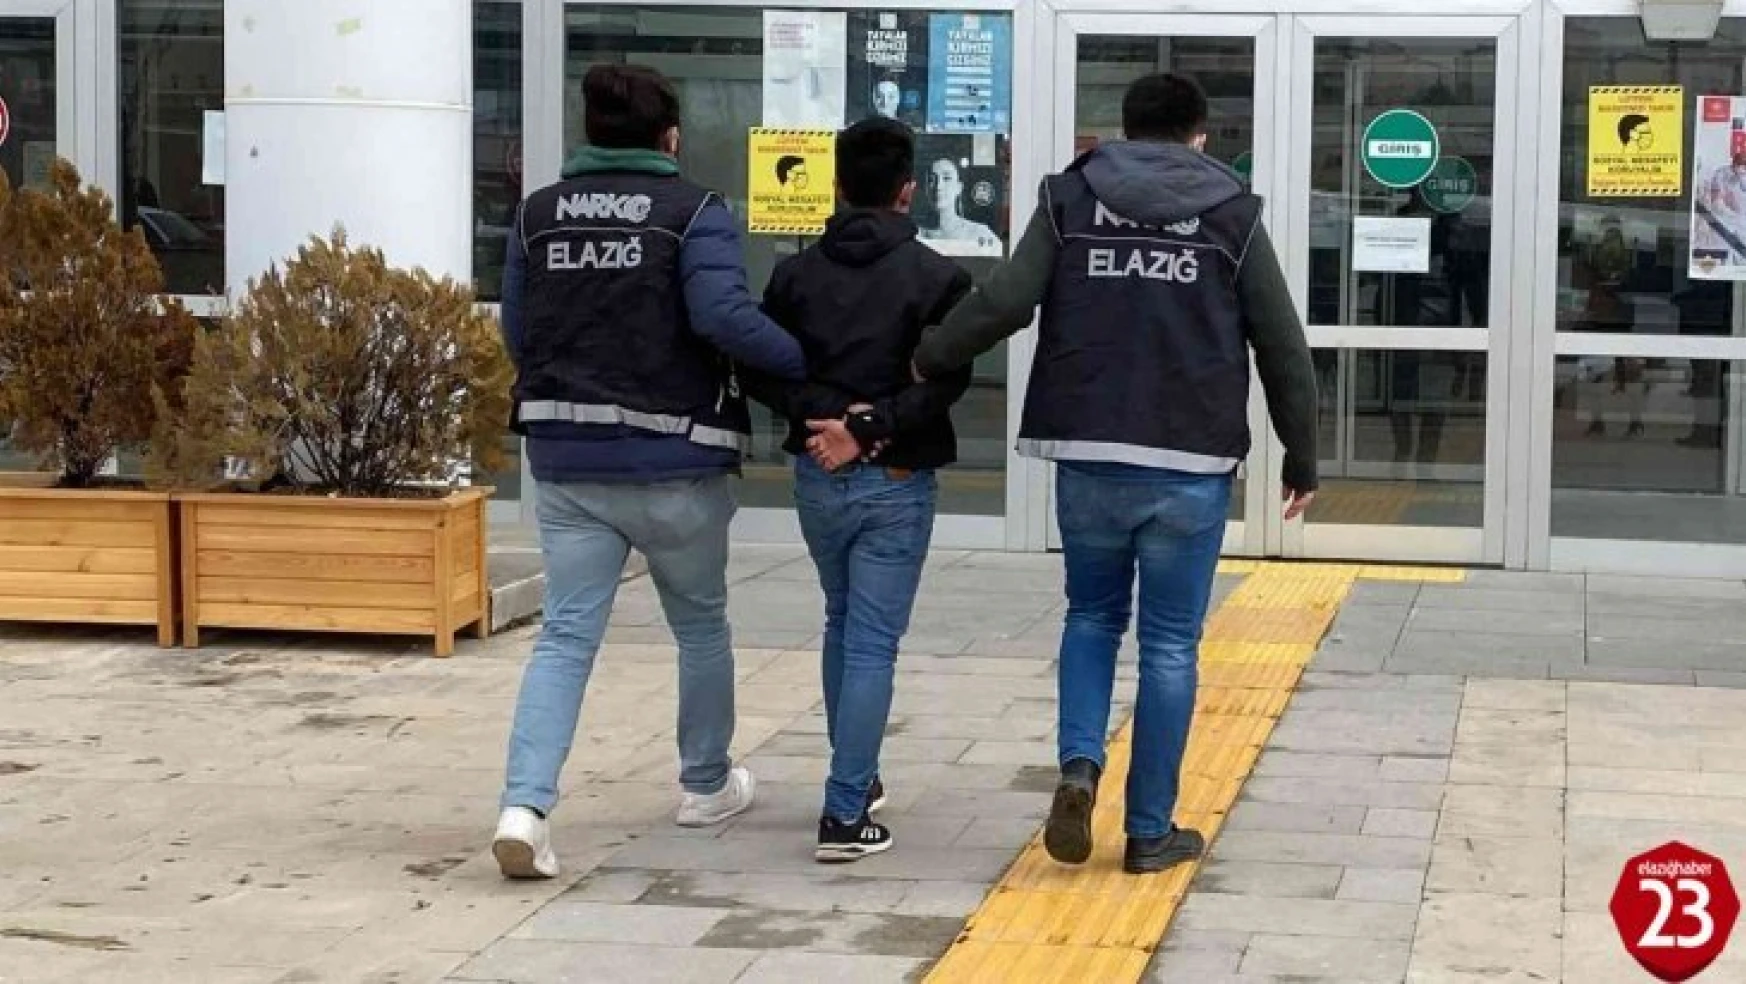 Elazığ'da Uyuşturucu Satıcılarına Nefes Aldırılmıyor, 1 Kişi Gözaltına Alındı